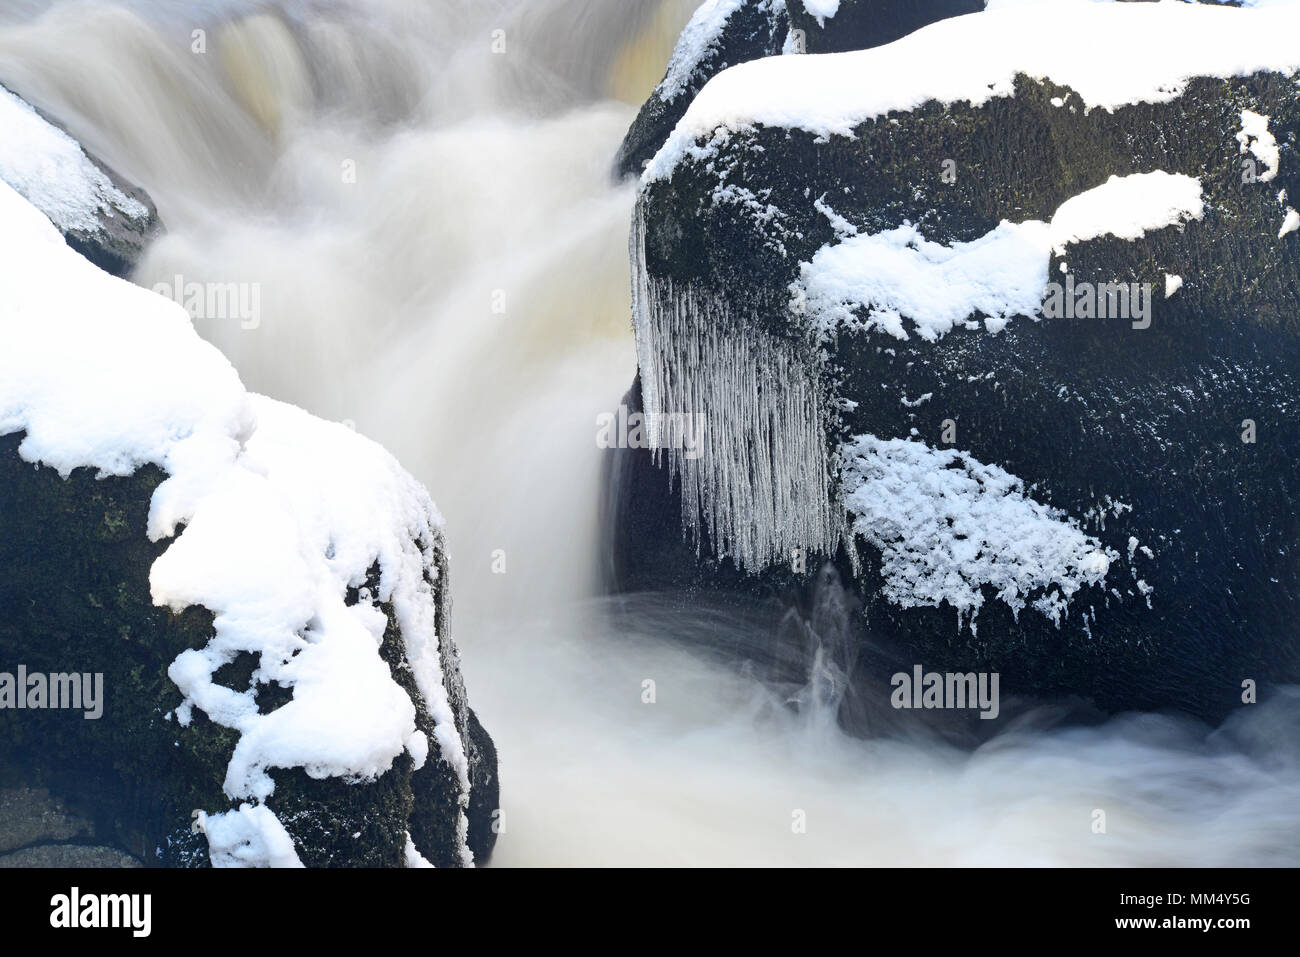 Nieve y carámbanos por el río wharfe fluyendo a través strid wood, una zona peligrosa del río,wharfedale Yorkshire Dales reino unido Foto de stock